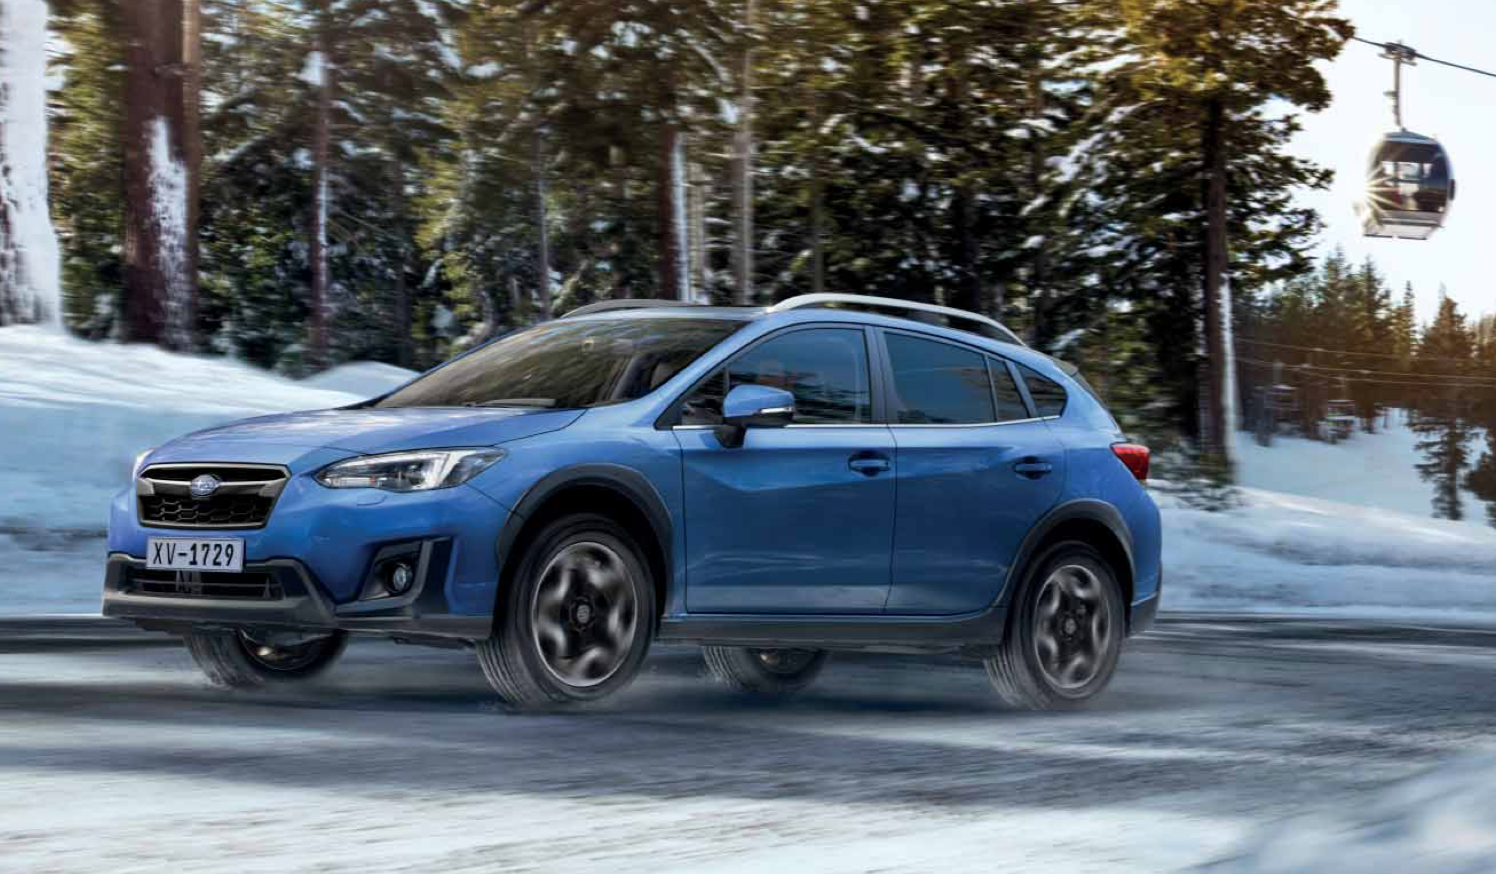 Subaru XV 2018 pozreli sme sa na cenník Autoblog